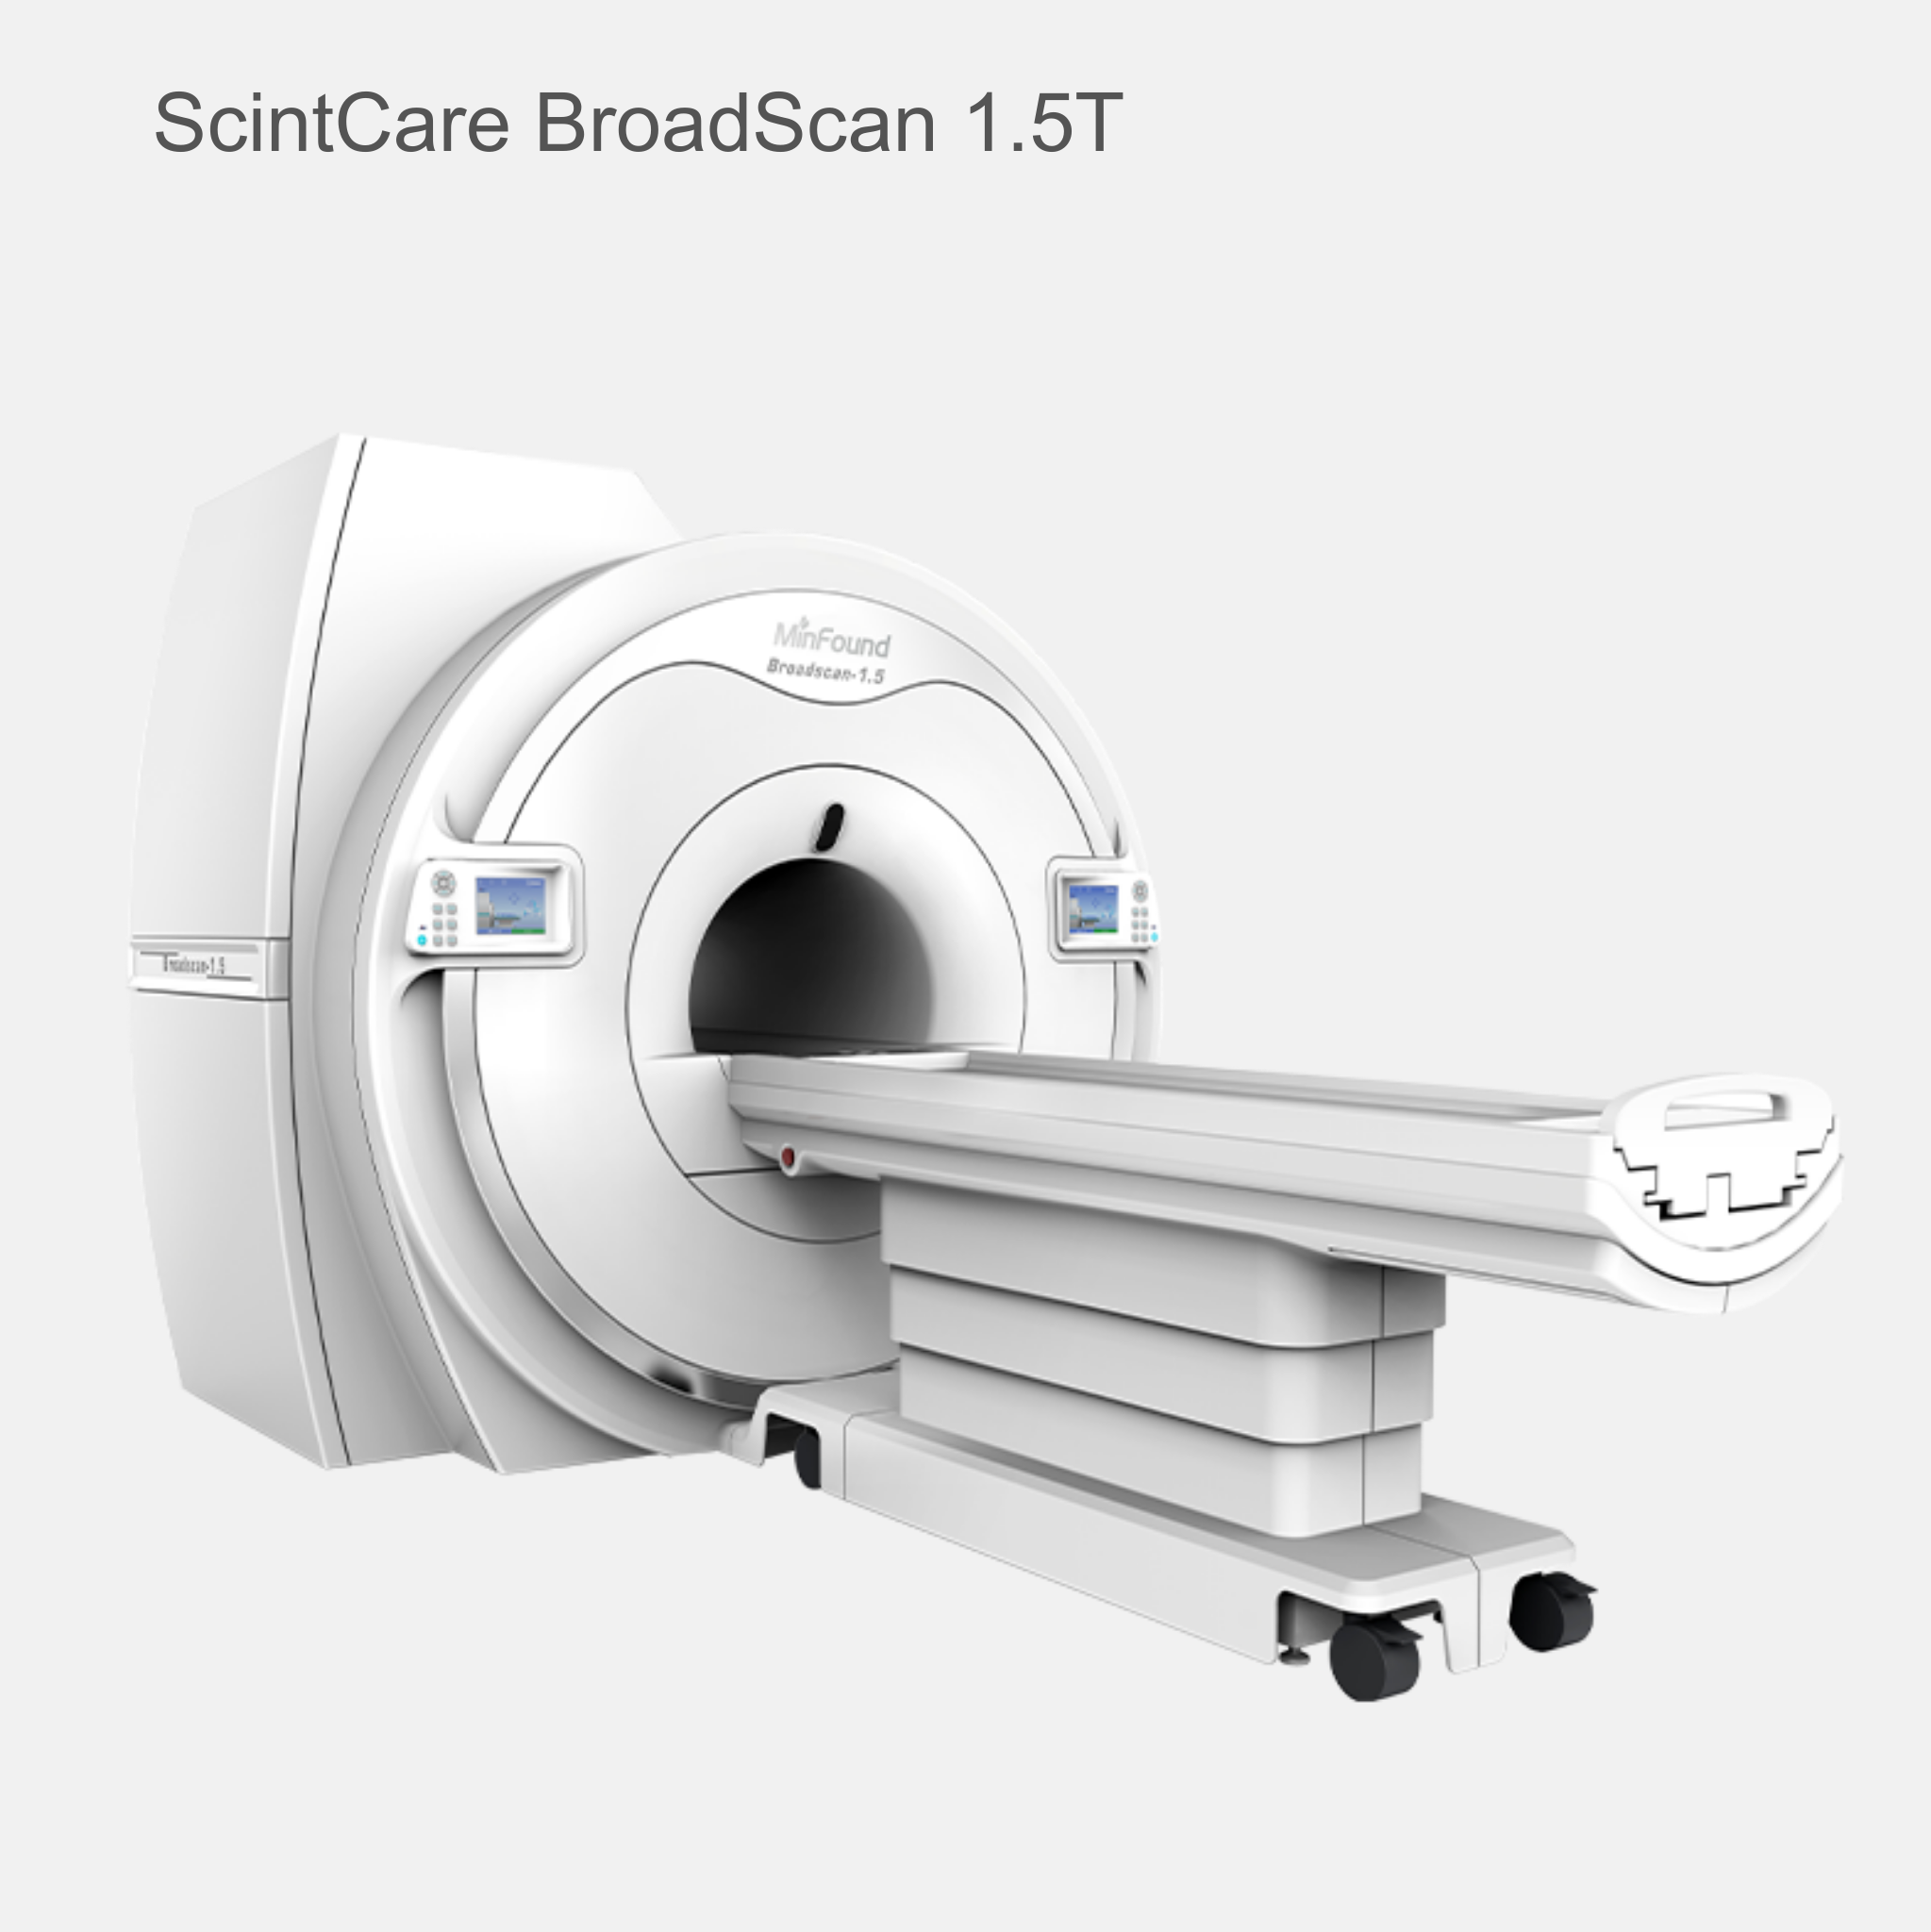 ScintCare BroadScan MRI 1.5T